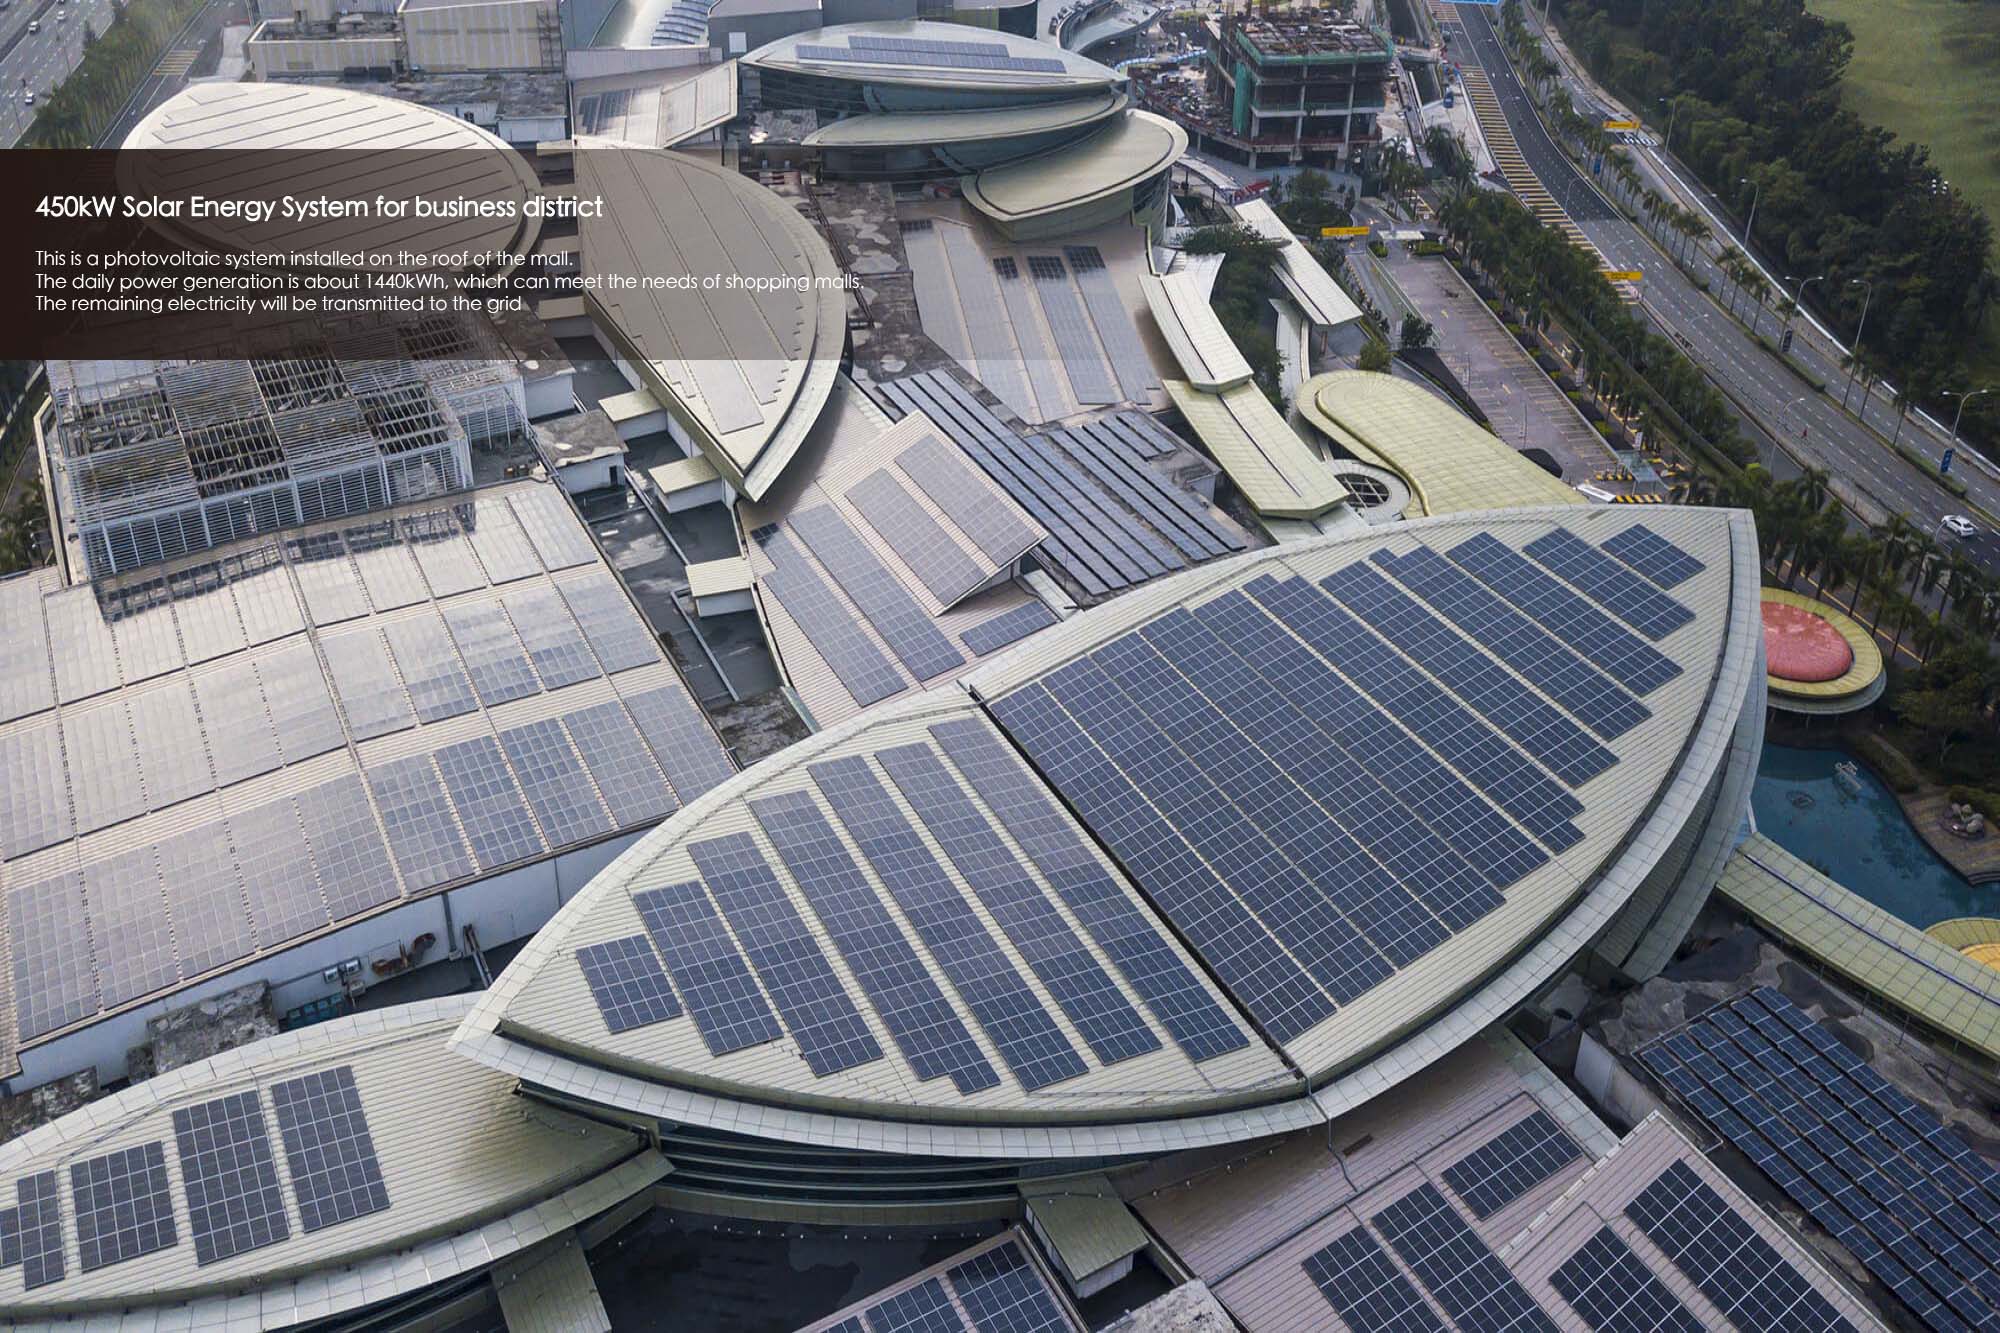 Sistema de energía solar de 450kW para distrito comercial